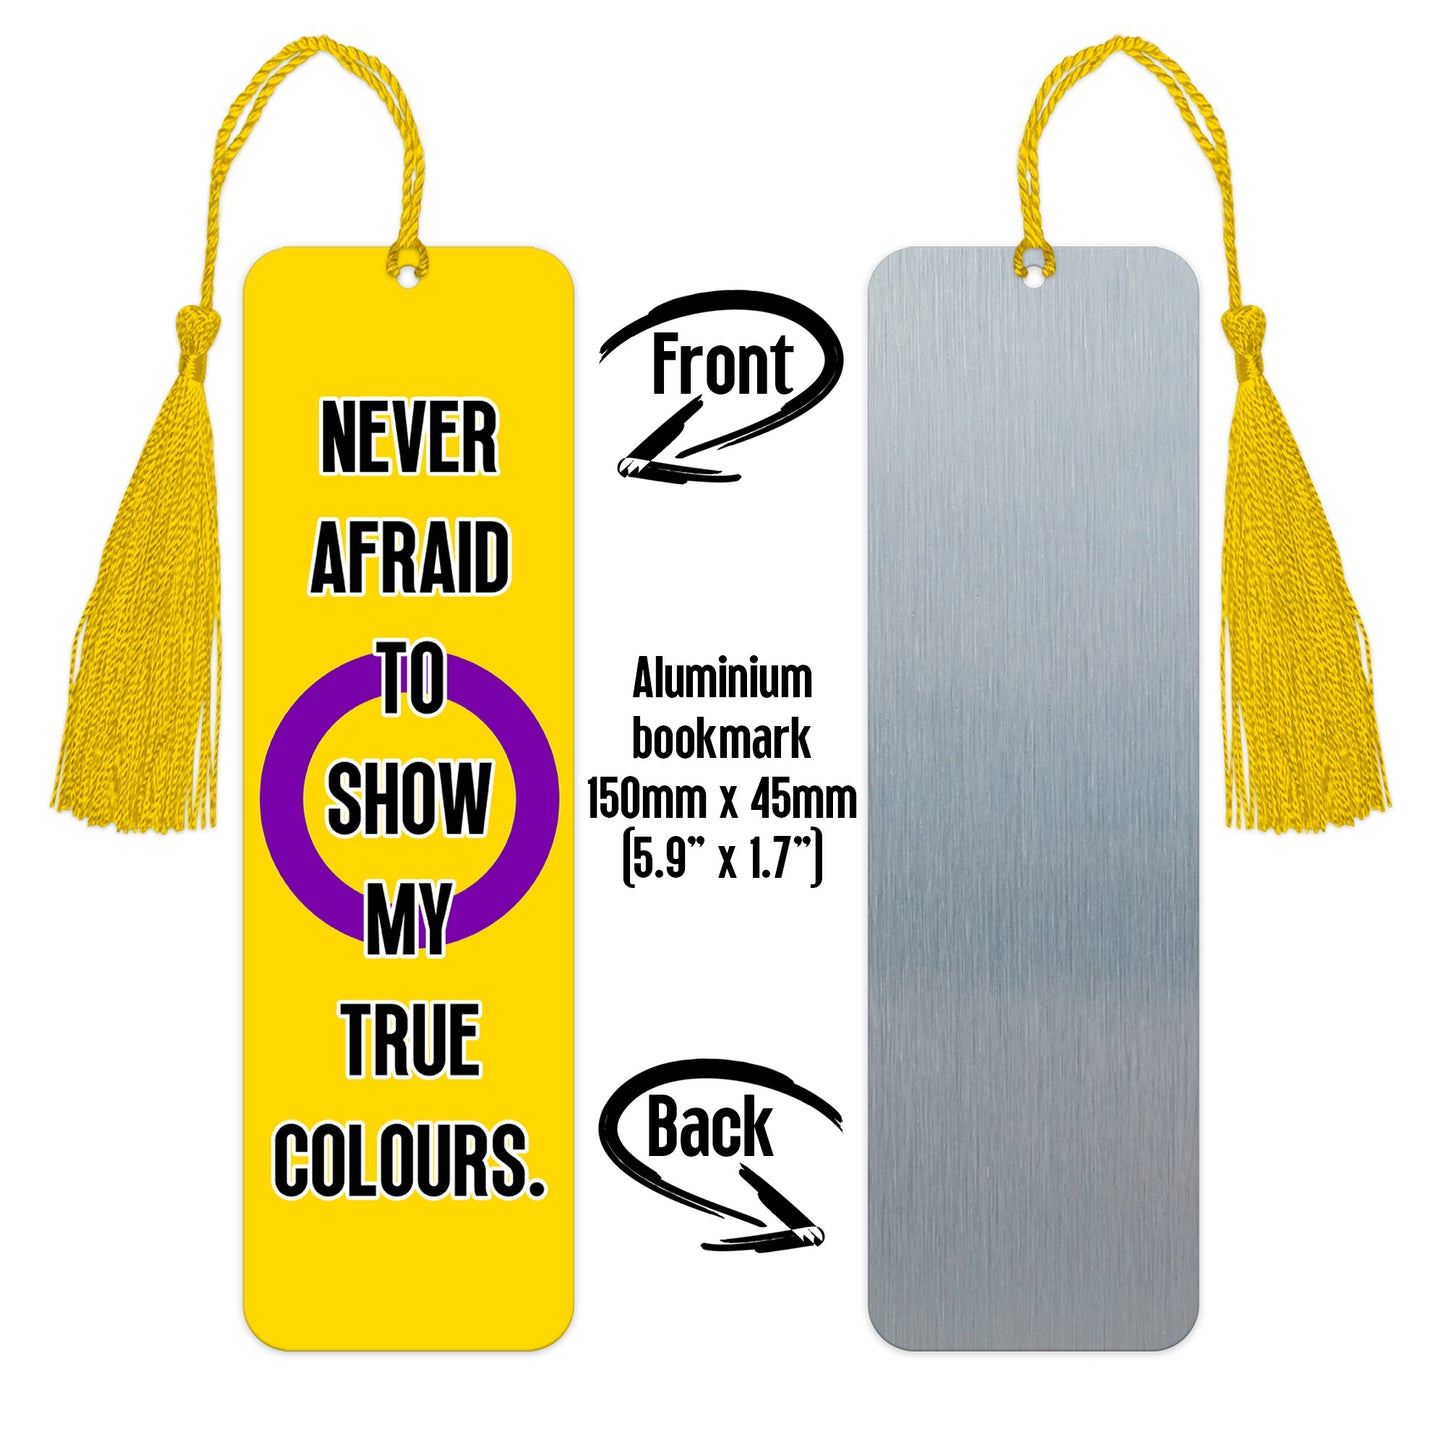 Intersex pride luxury aluminium bookmark never afraid to show my true colours